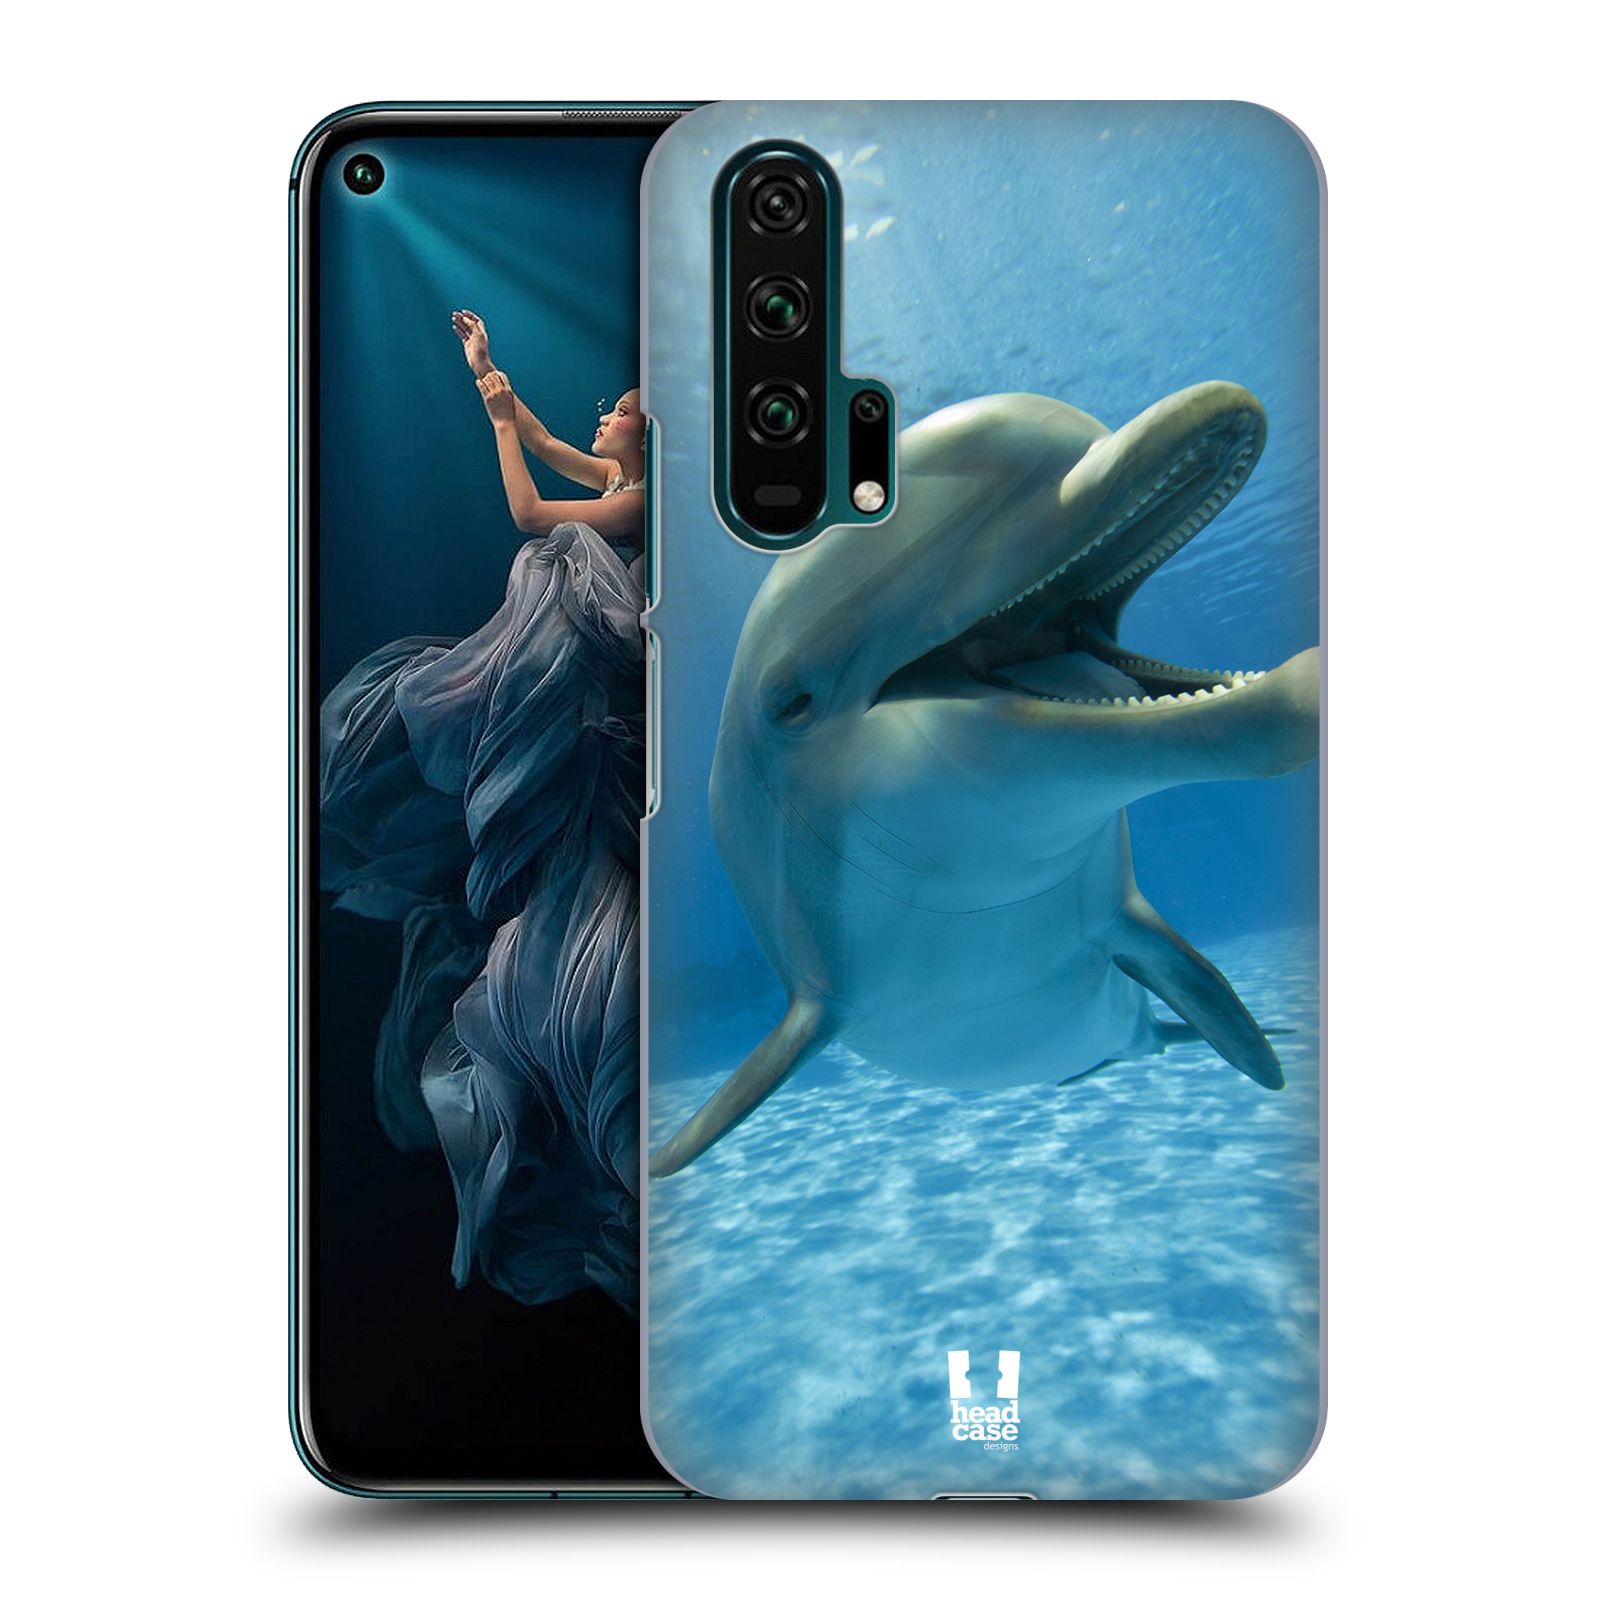 Zadní obal pro mobil Honor 20 PRO - HEAD CASE - Svět zvířat delfín v moři